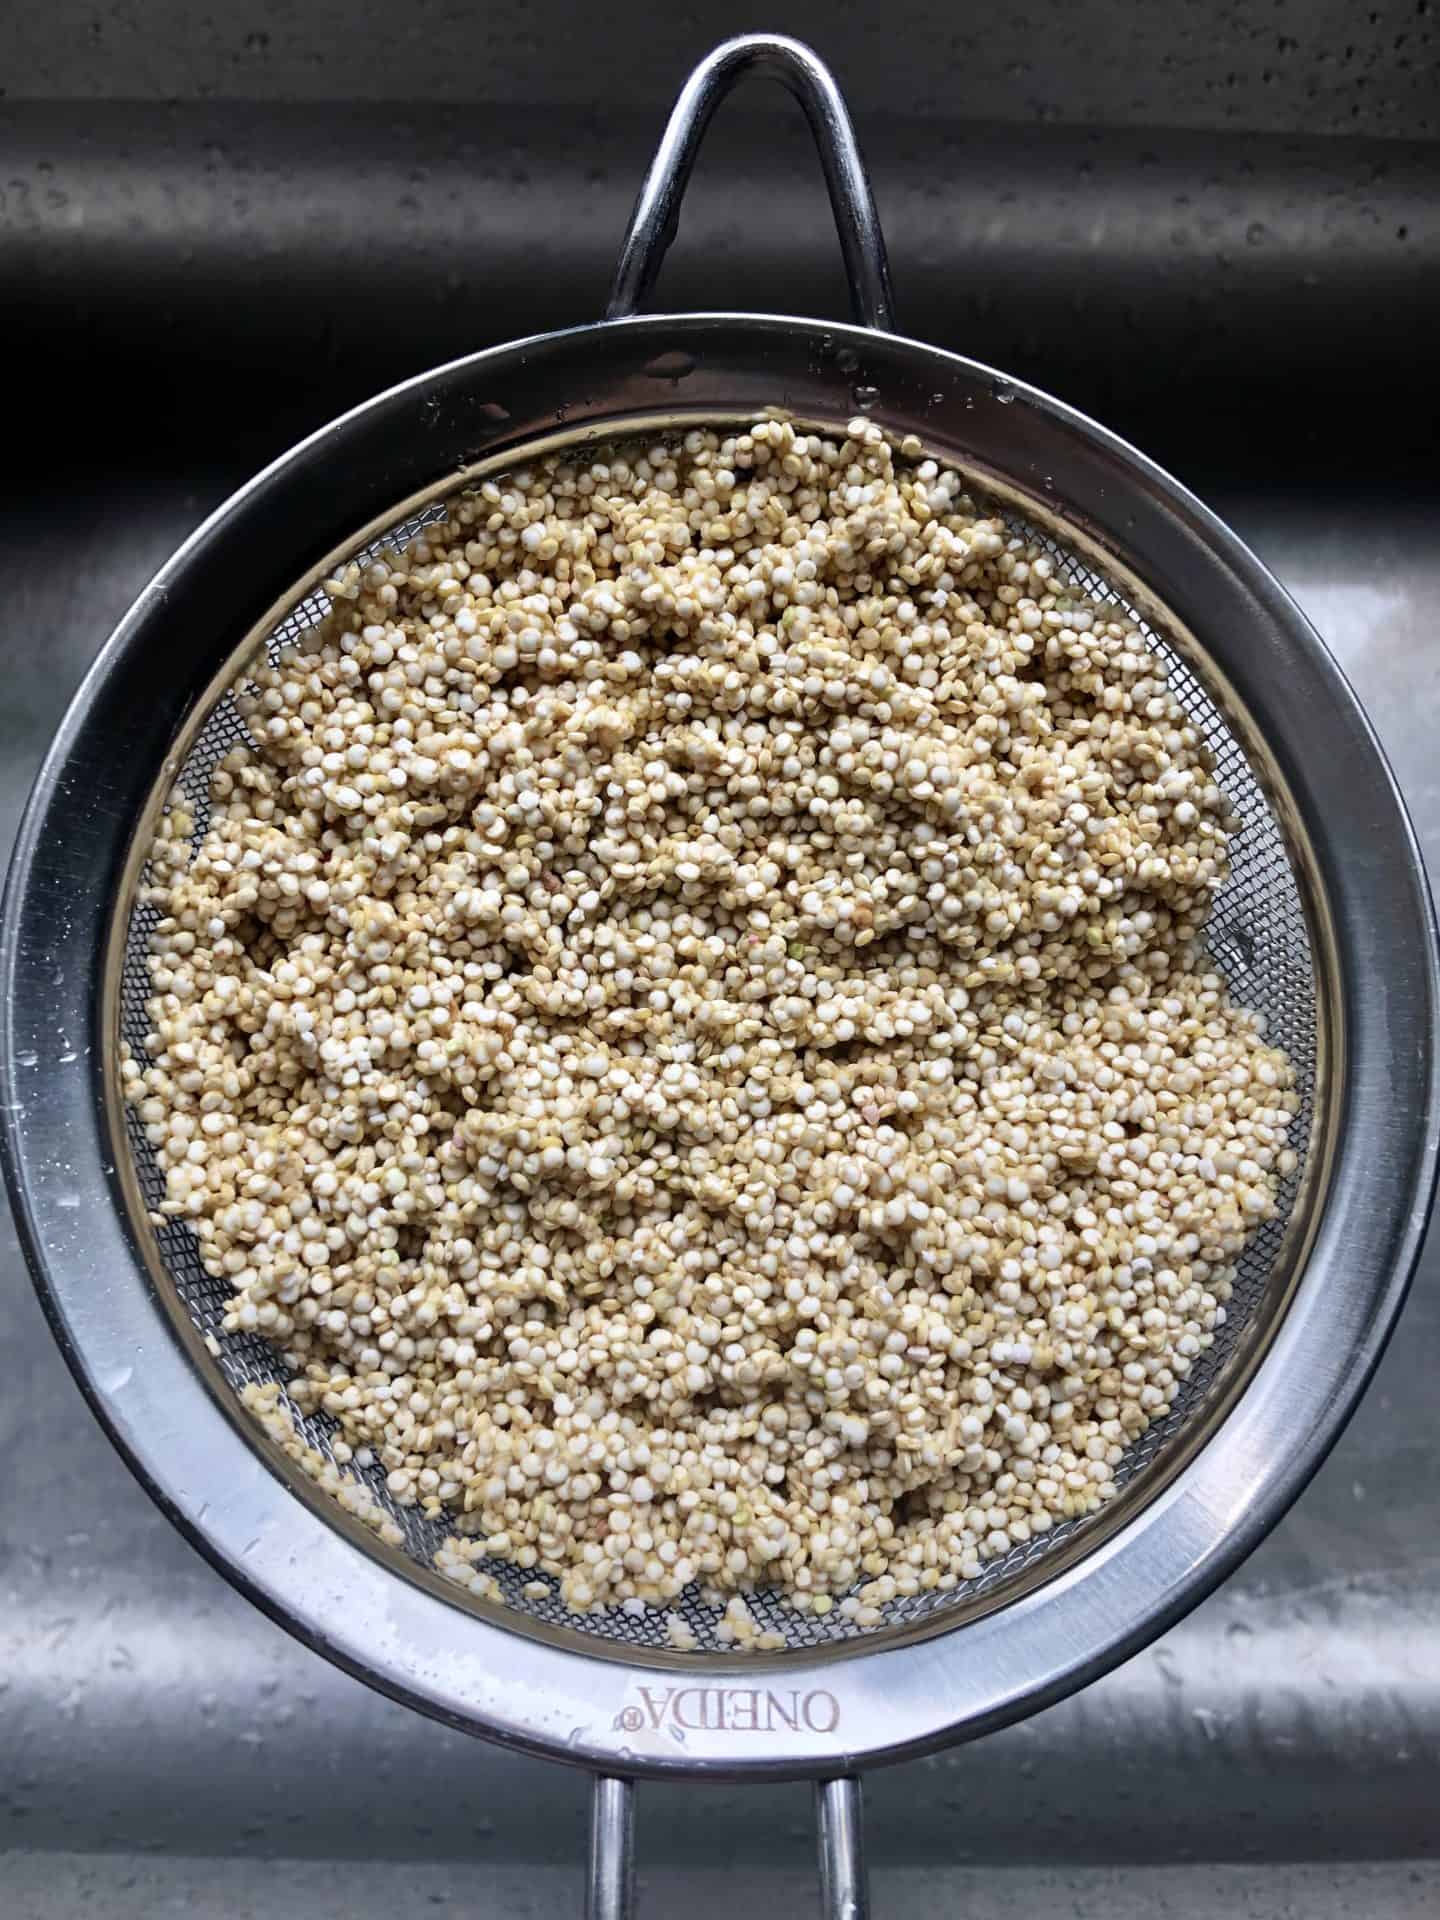 Quinoa rinsing in strainer